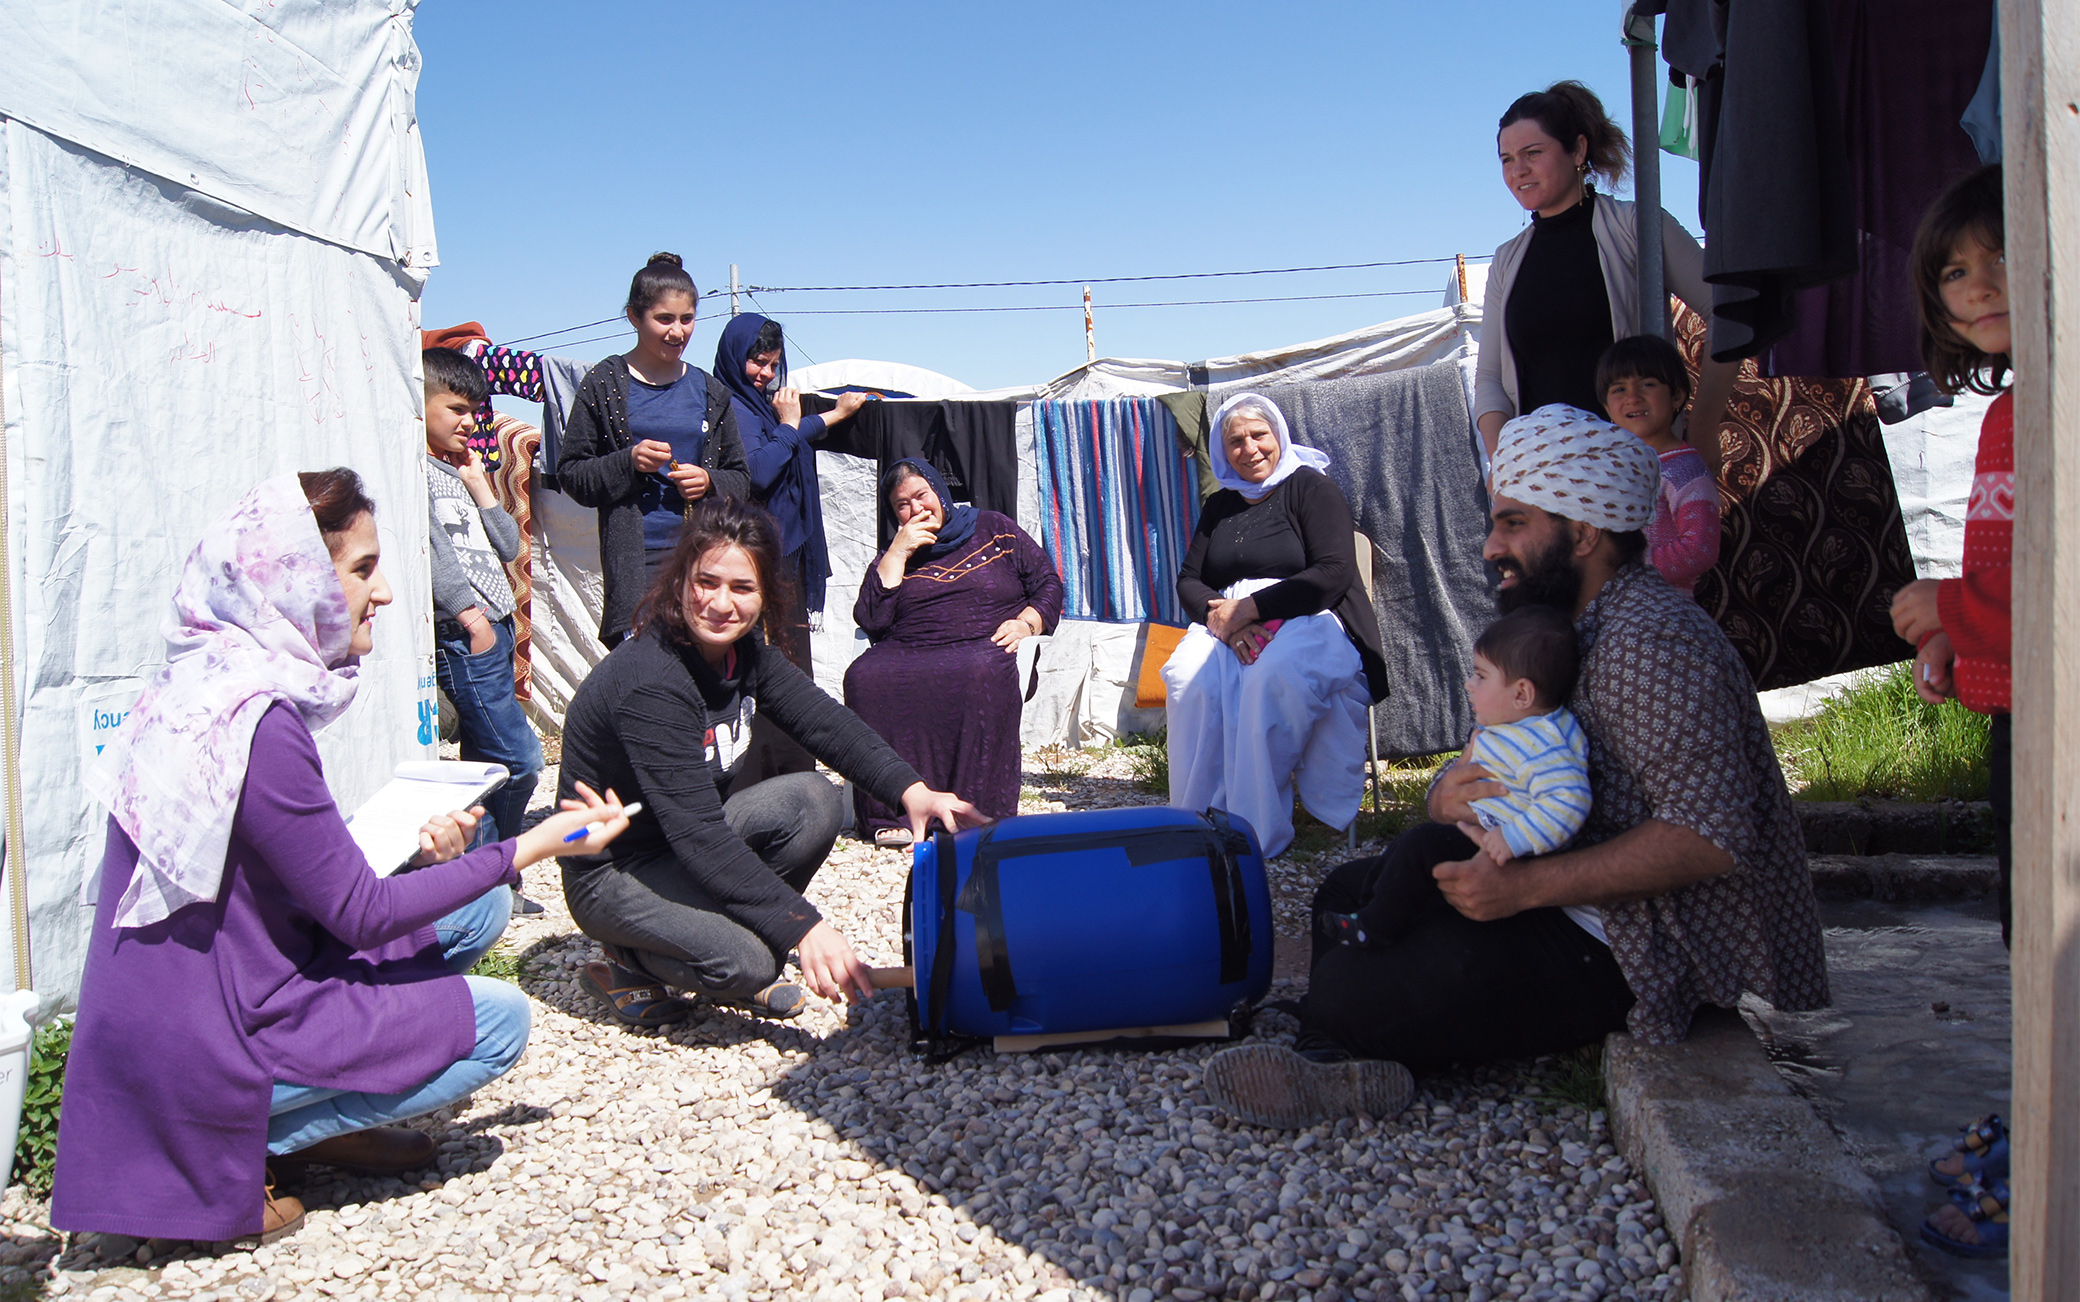 Divya e The Washing Machine Project, come funziona la lavatrice realizzata per scopi umanitari